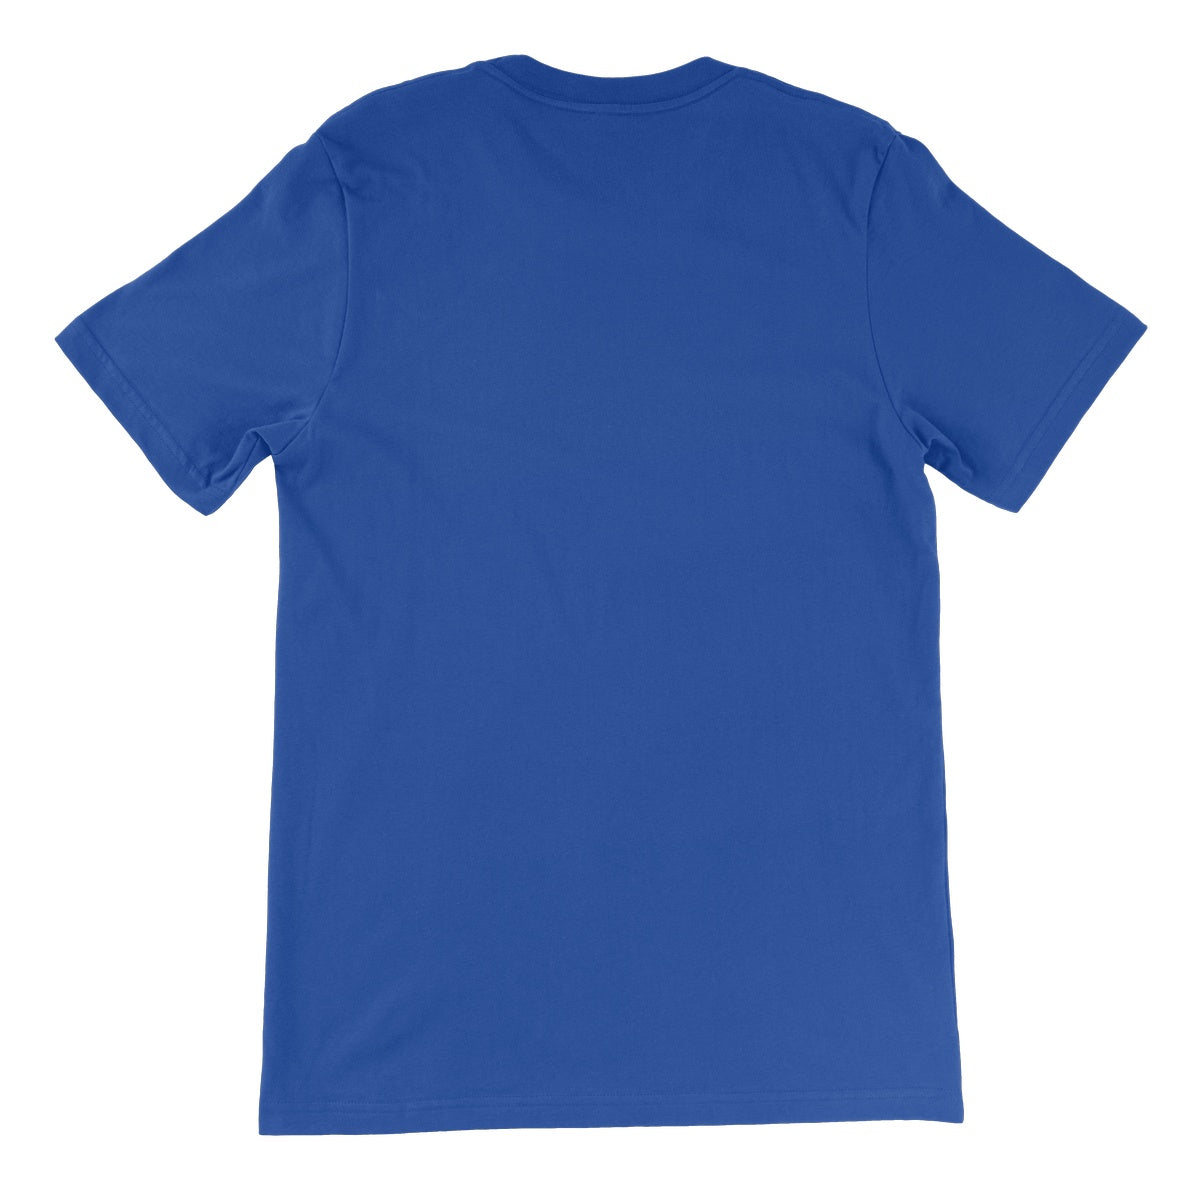 Dipole, Xray Globe Unisex Short Sleeve T-Shirt